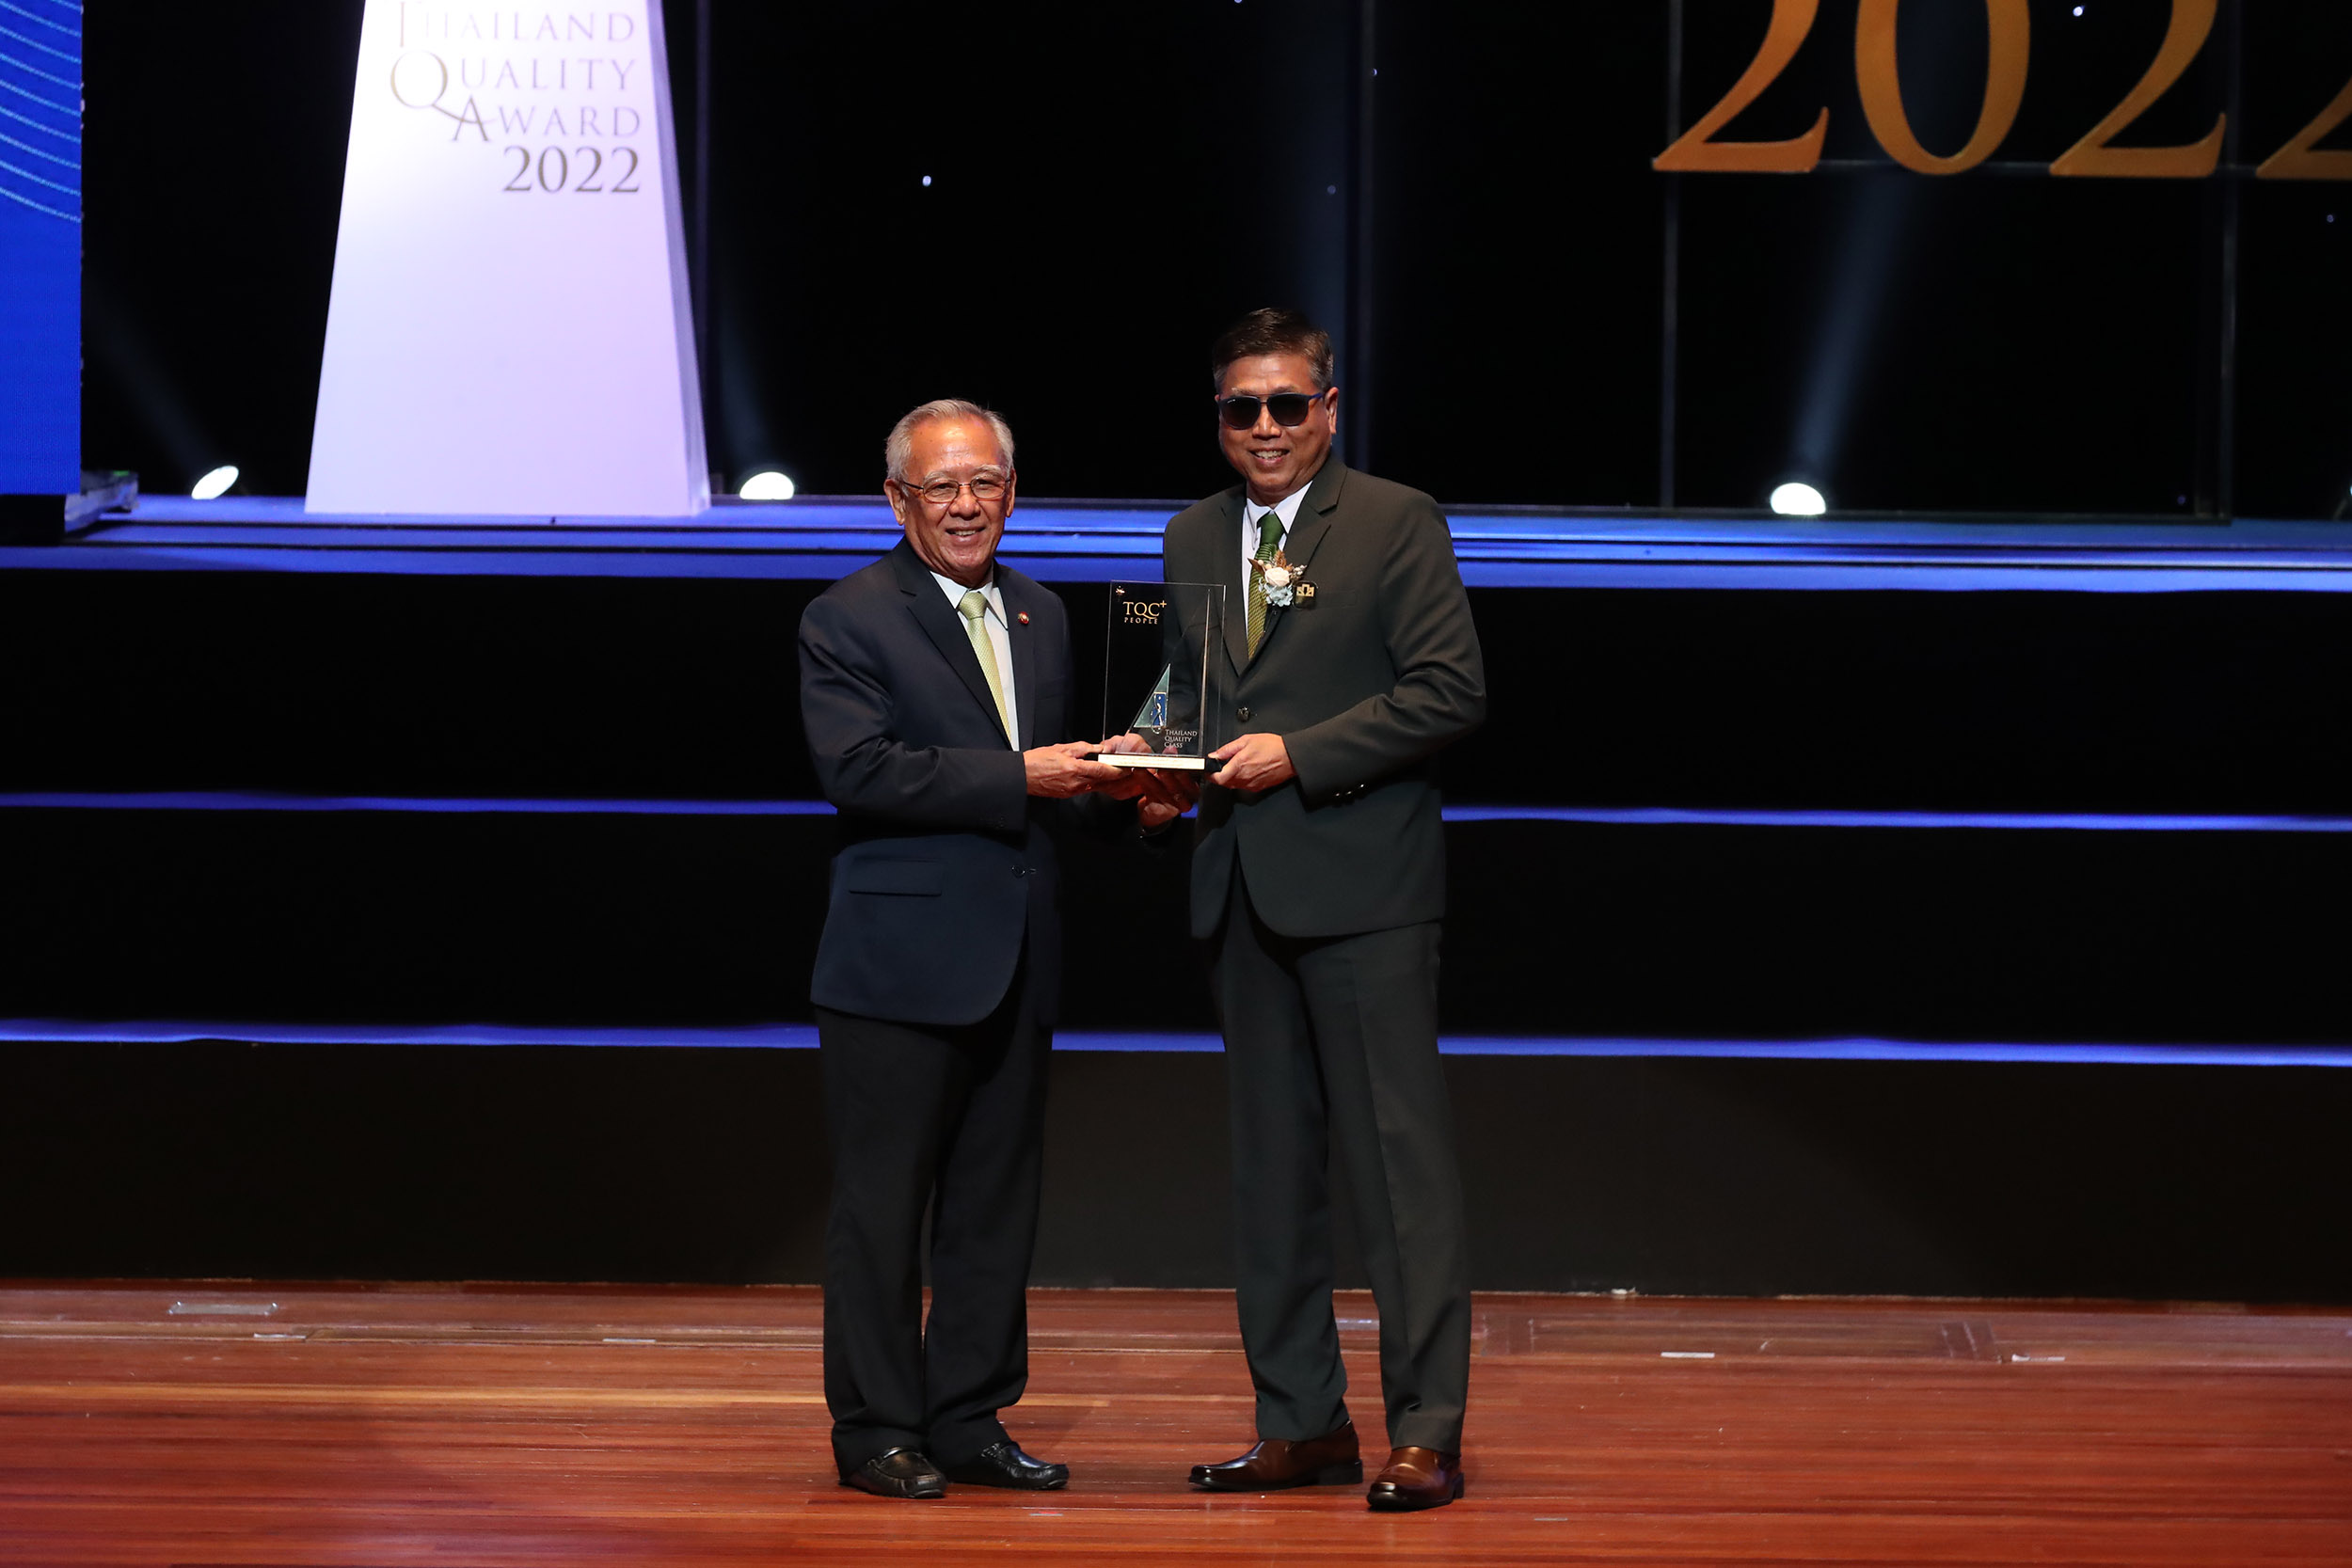 ธ.ก.ส. เข้ารับรางวัลงาน Thailand Quality Award 2022